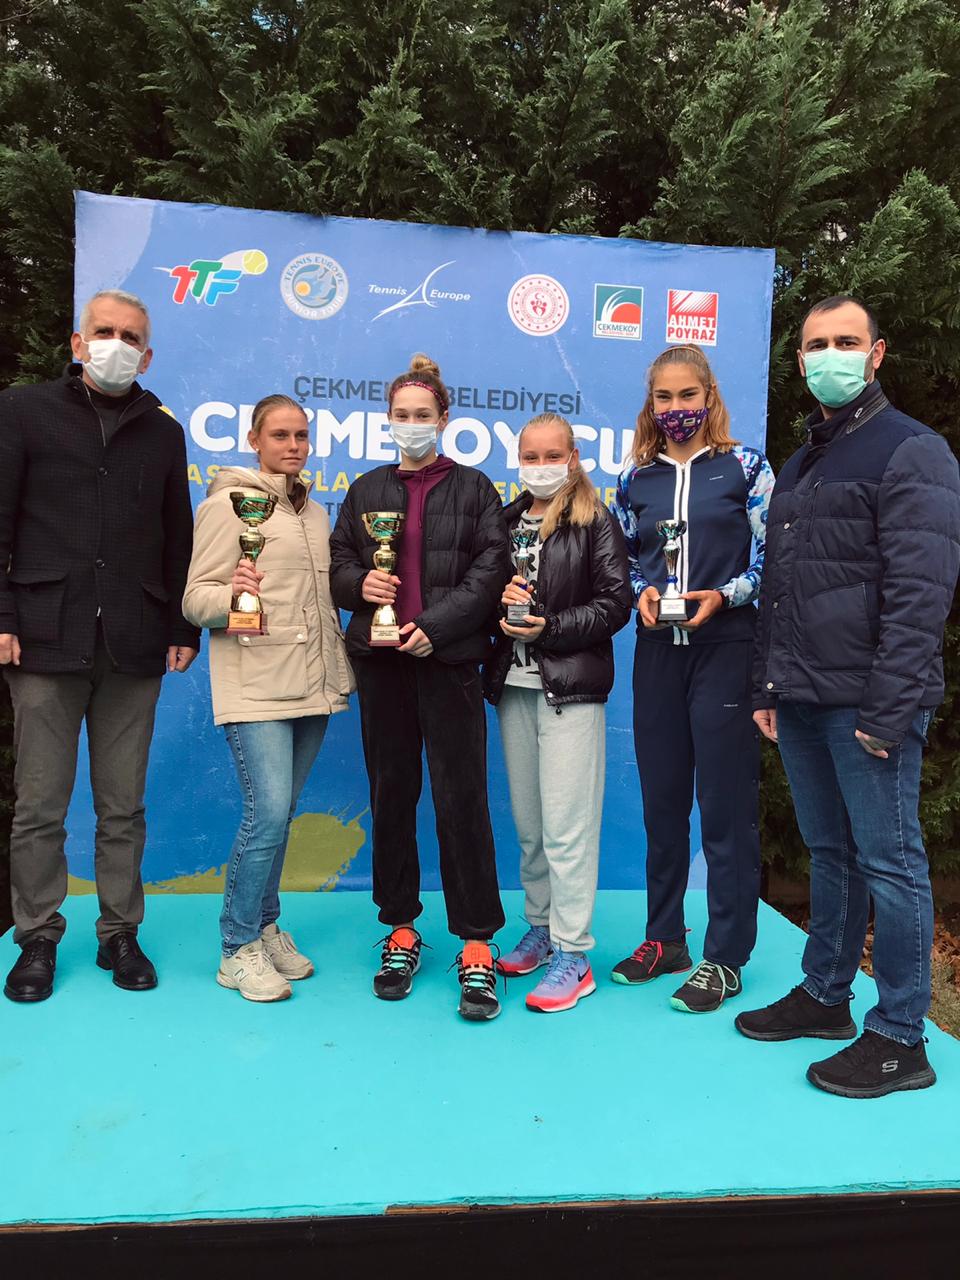 Полина Кратюк - призер турнира Tennis Europe «Çekmekoy Cup» 2020 до 17 лет в Турции